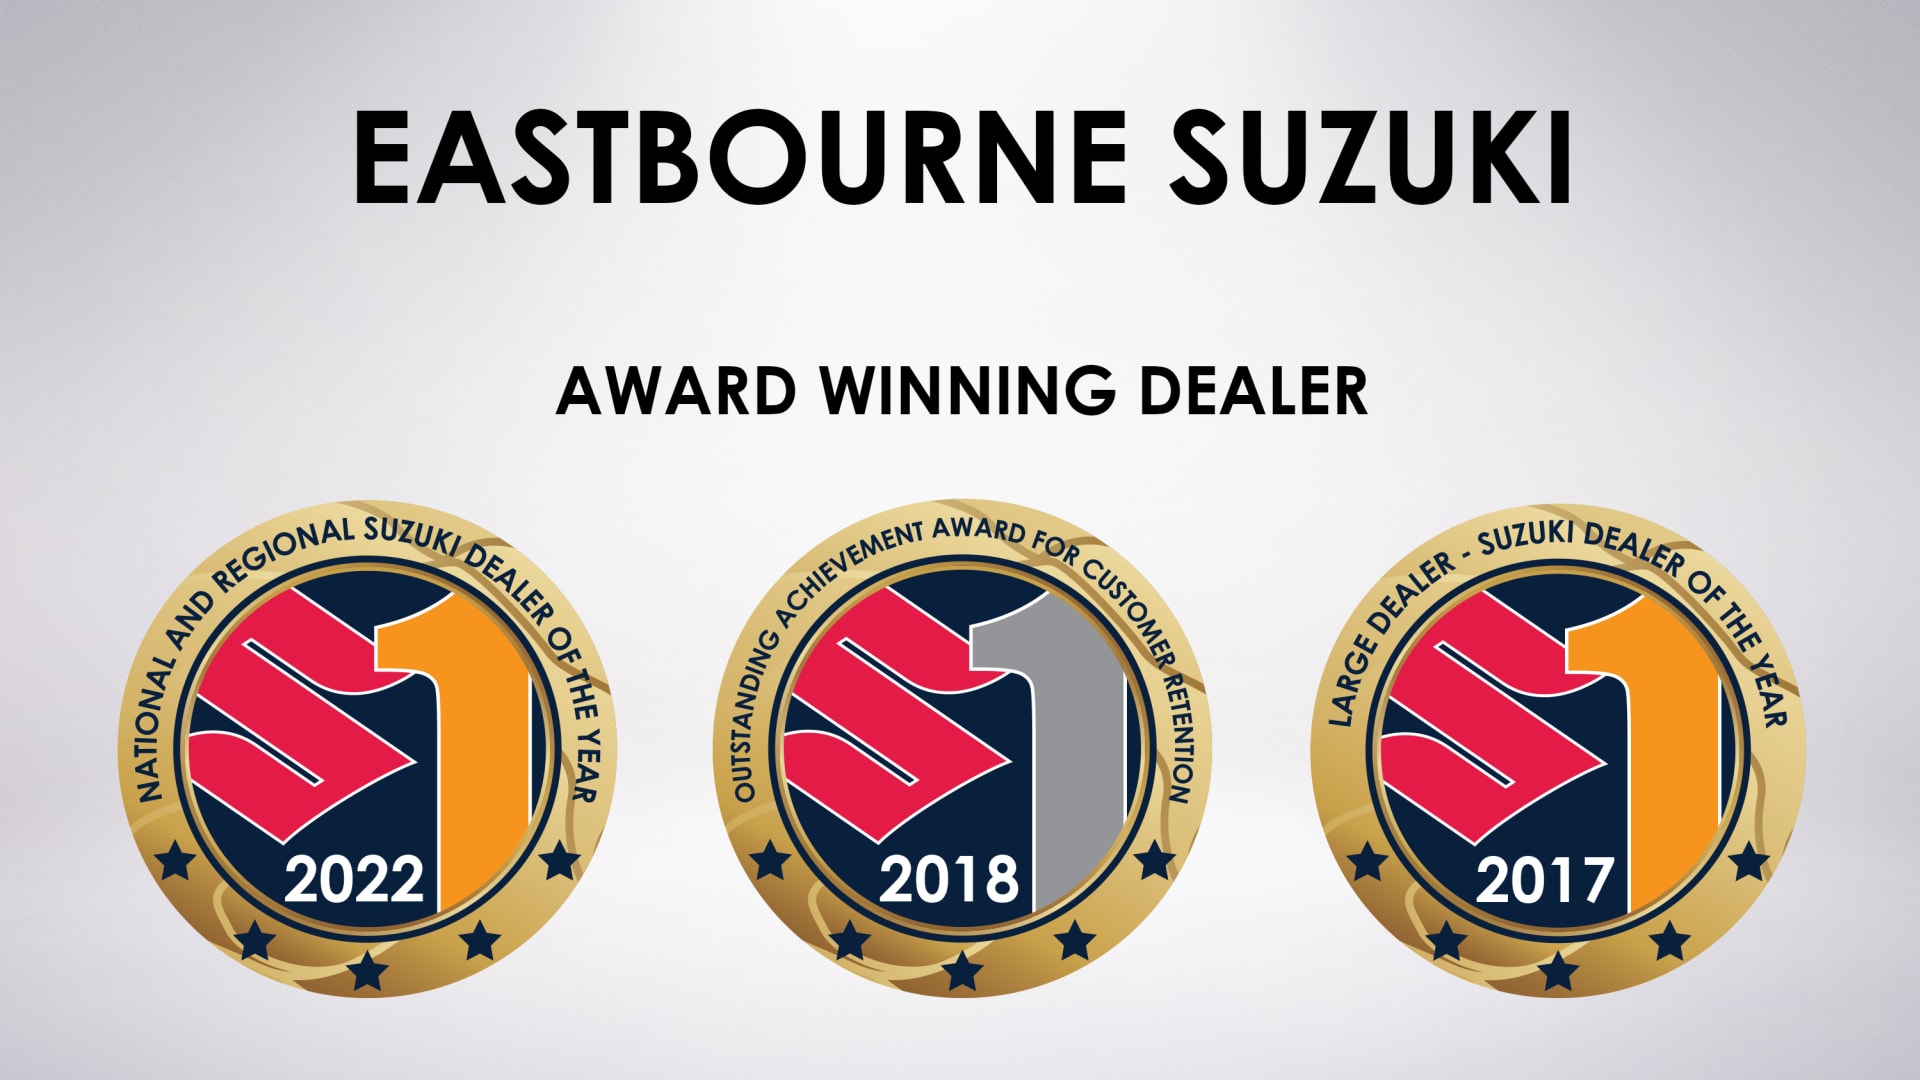 Suzuki Dealer of the Year 2022